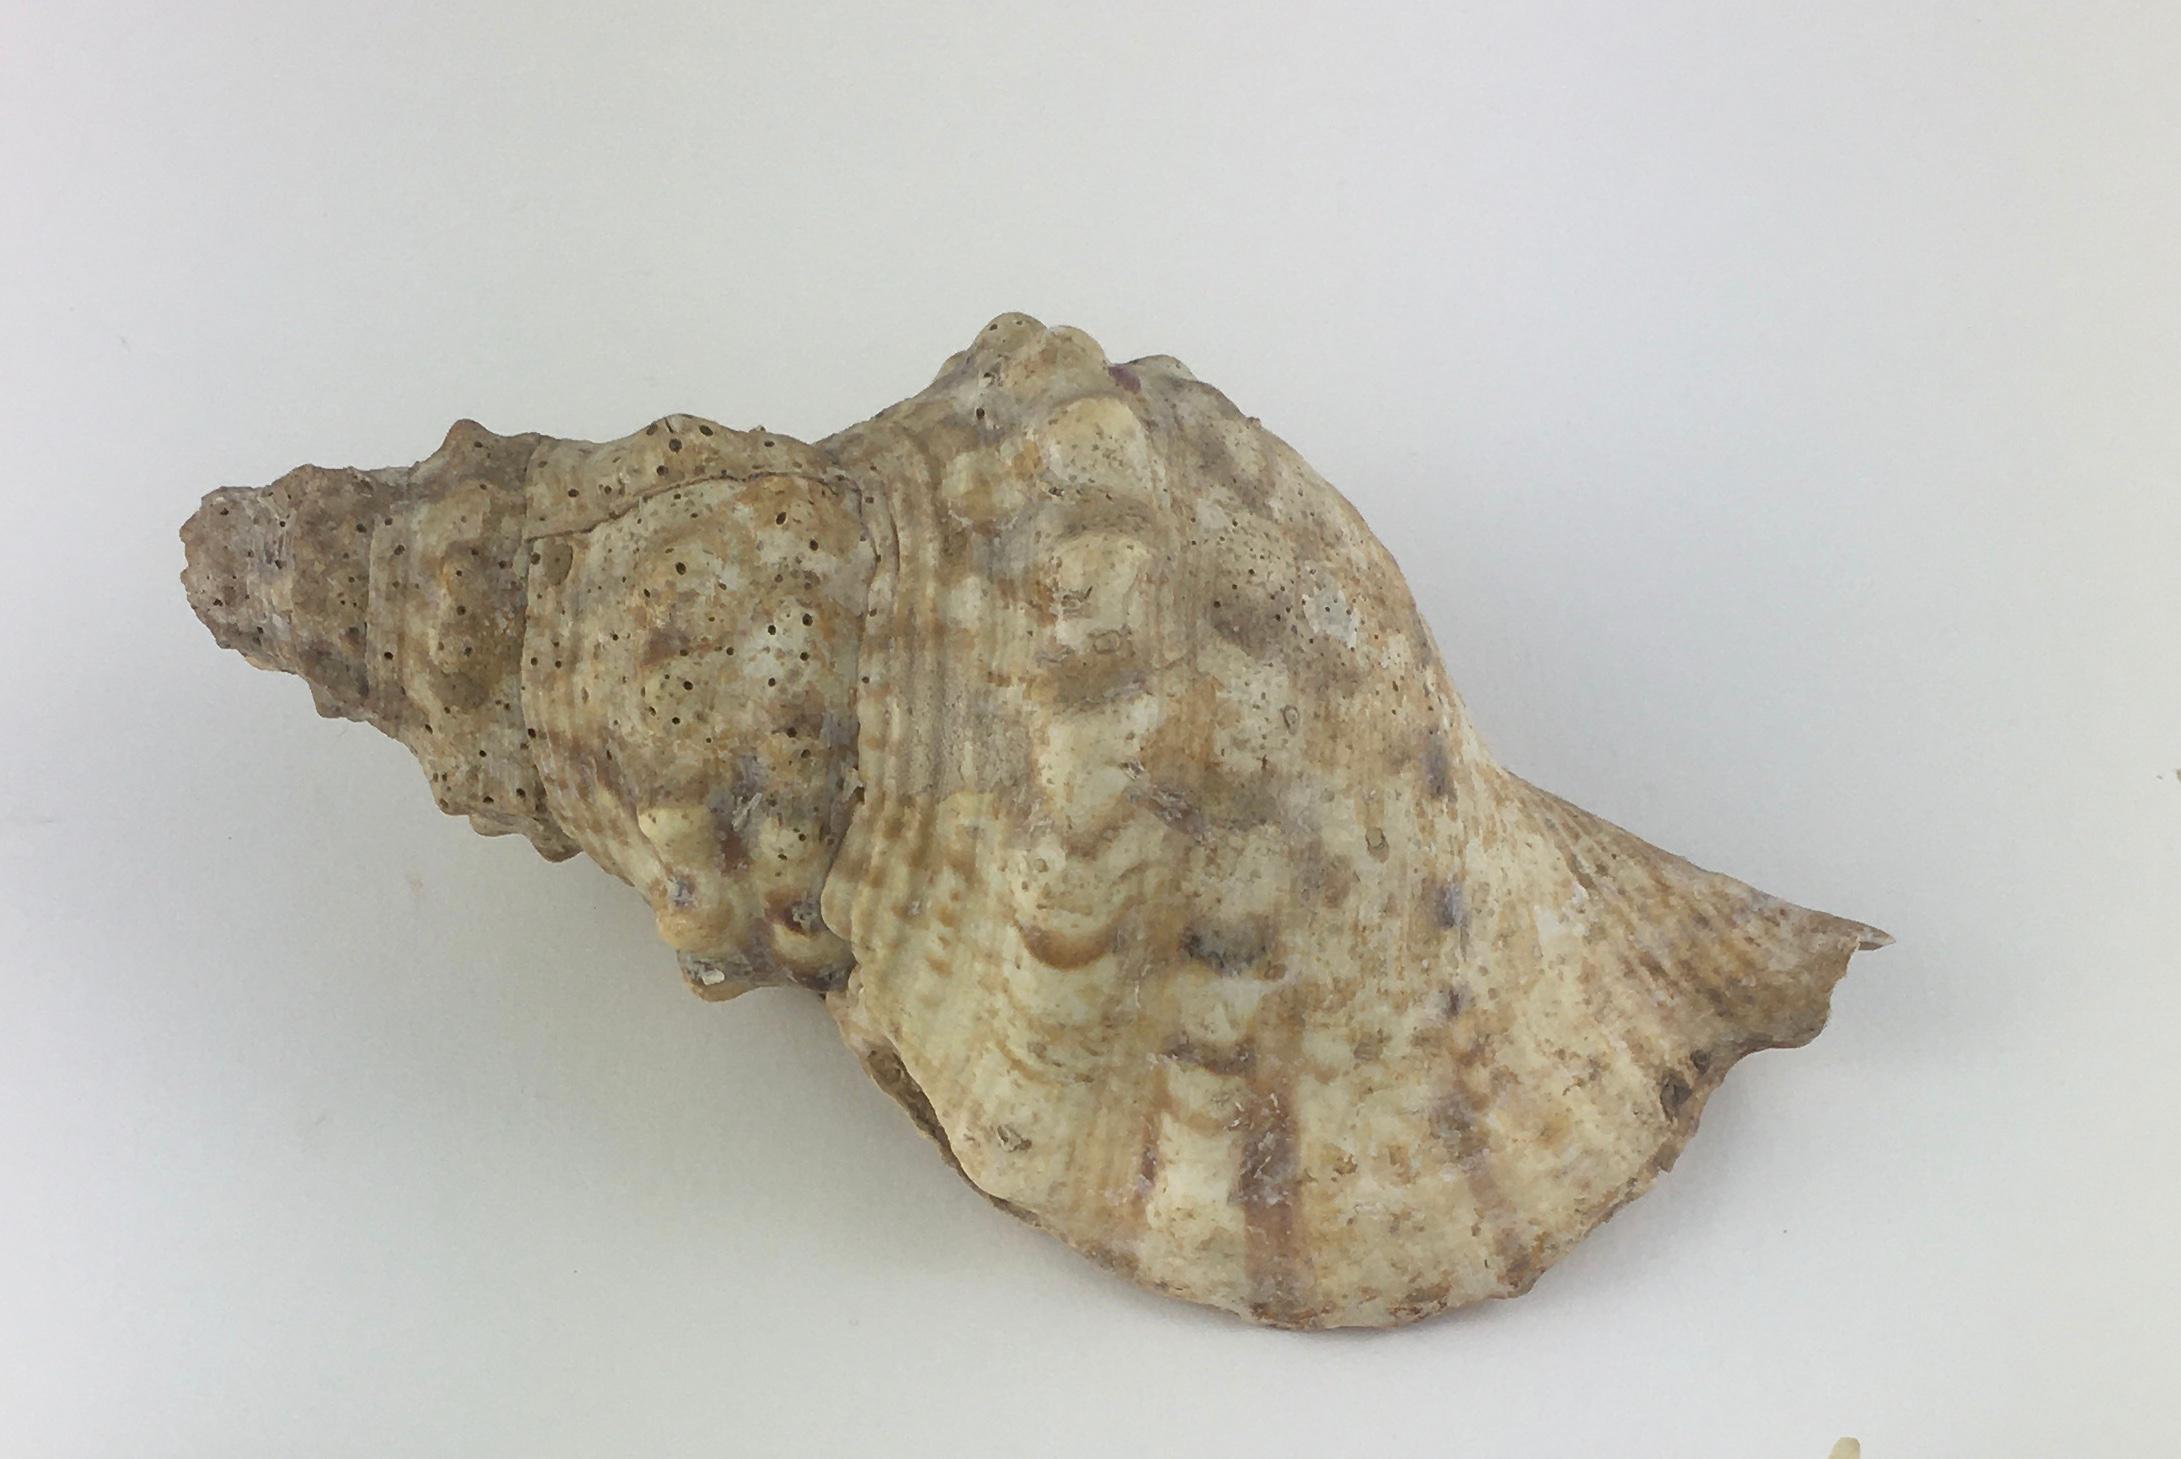 Magnifique spécimen naturel, Charonia est un genre de très gros escargot de mer, communément appelé trompette de Triton ou escargot de Triton. Ce sont des mollusques gastéropodes marins de la famille monotypique des Charoniidae.
Cette espèce a une